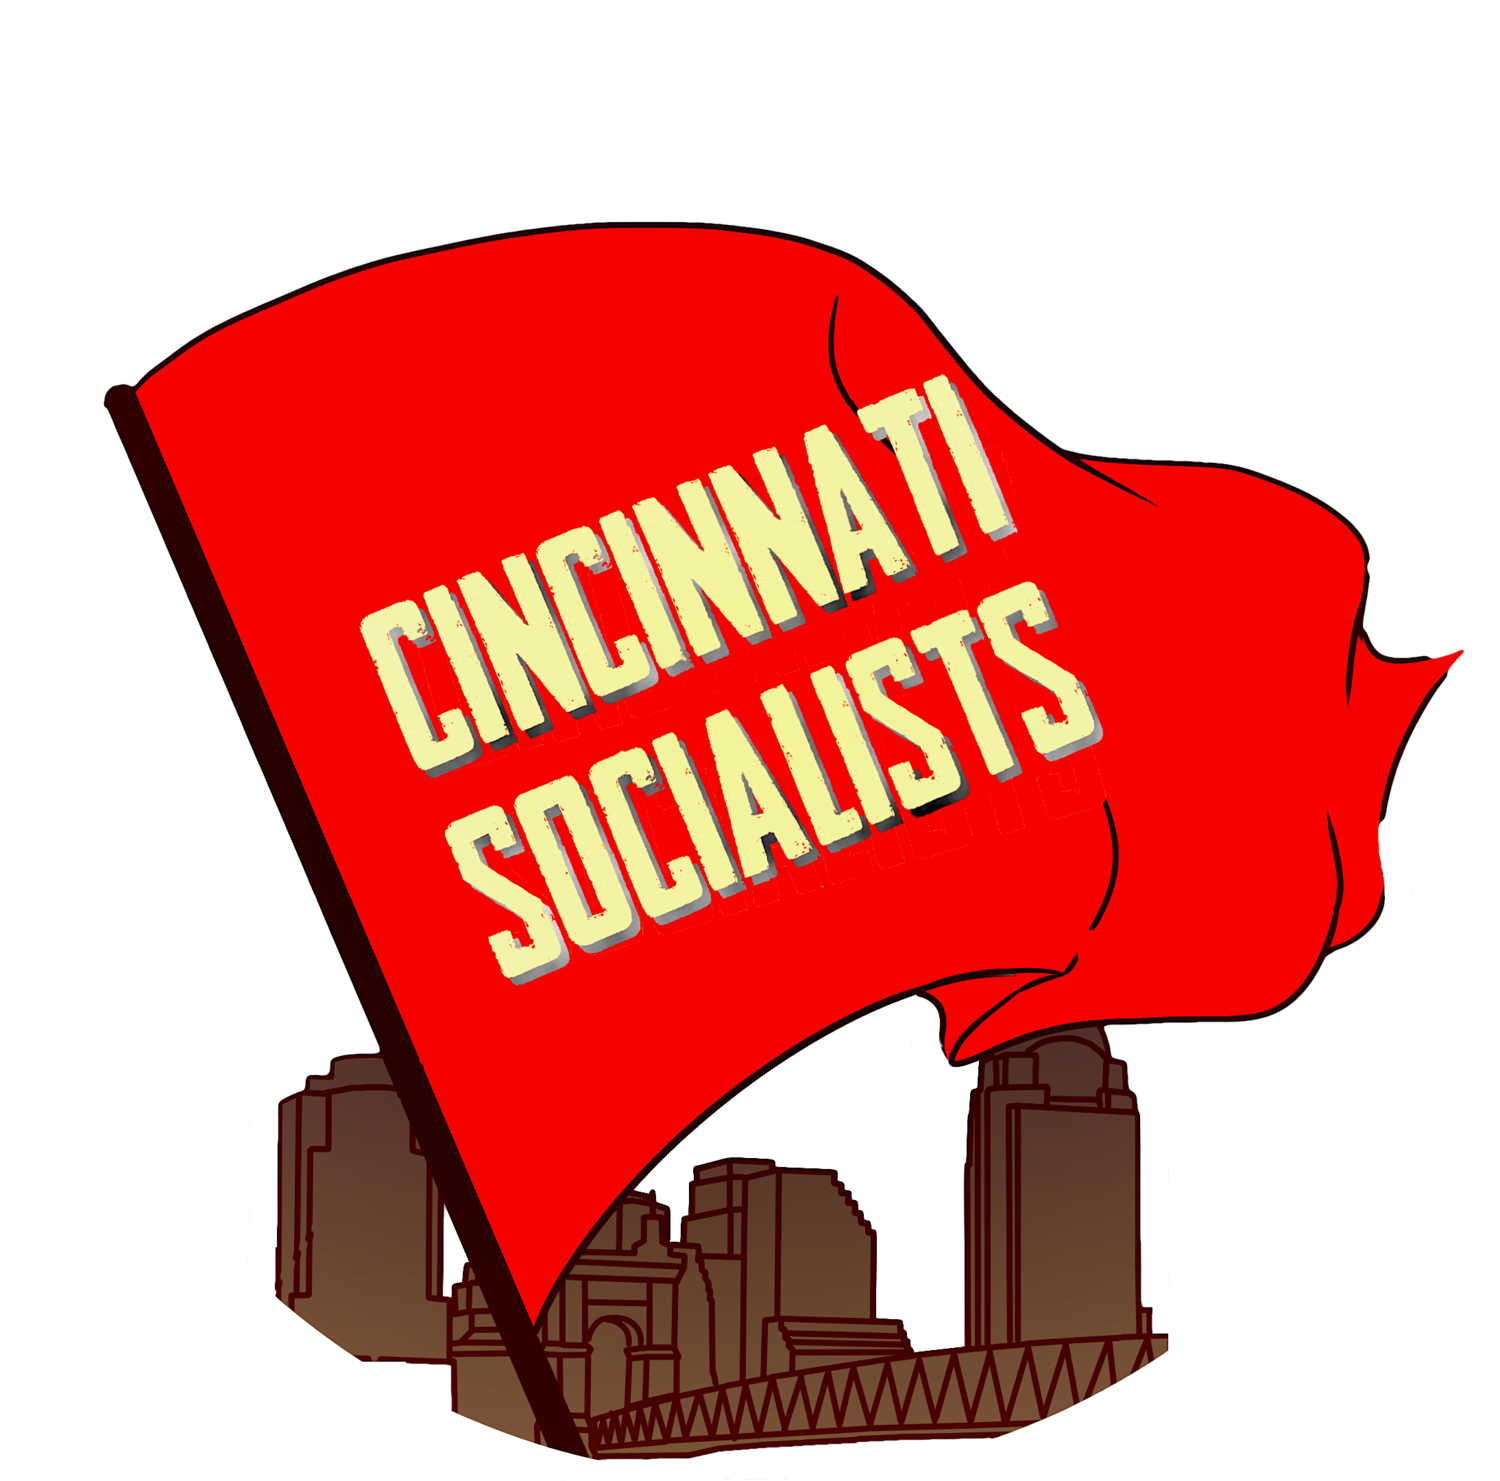 Cincinnati Socialists